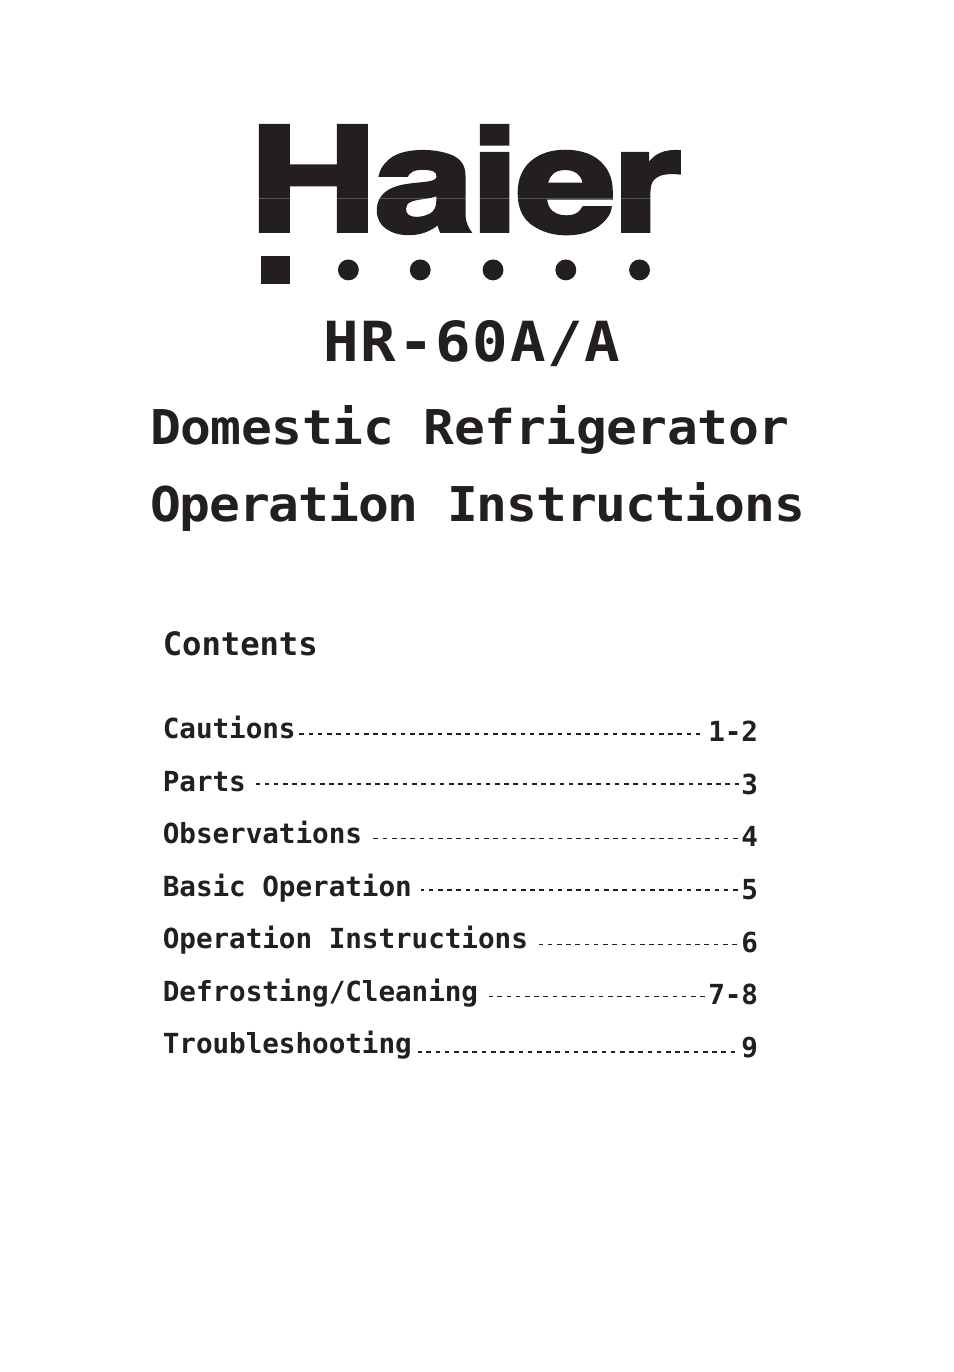 HR-60A/A